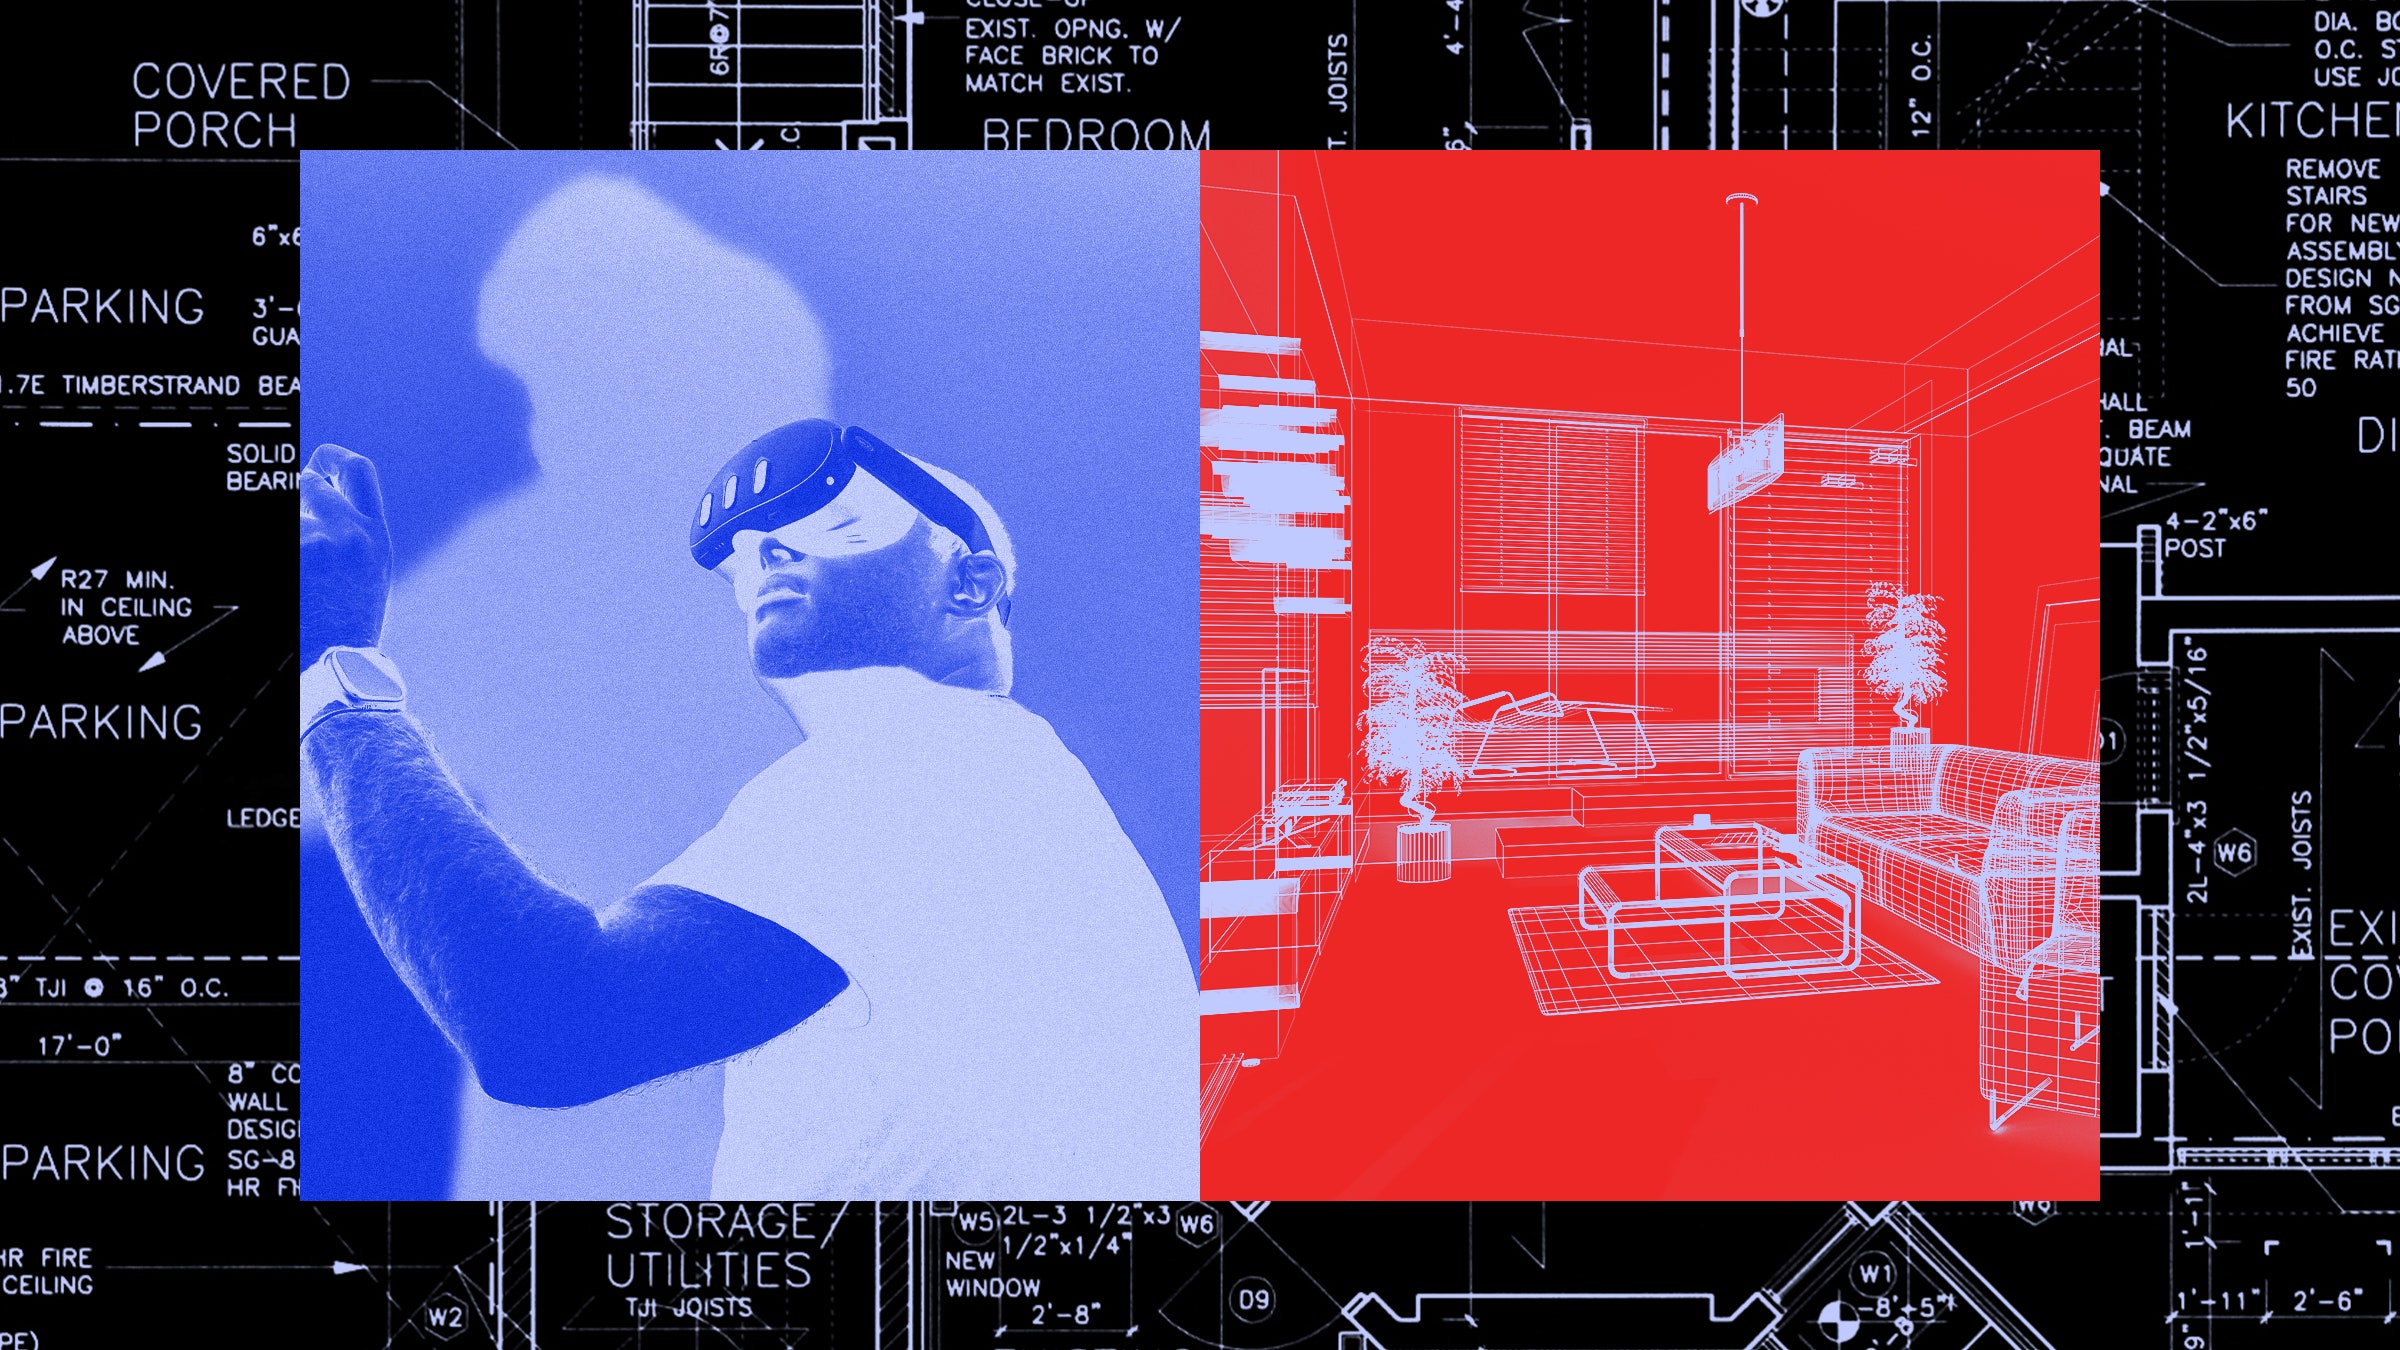 Colagem de uma pessoa usando um headset de realidade virtual, um mapa wireframe de uma sala de estar e um mapa do layout da casa